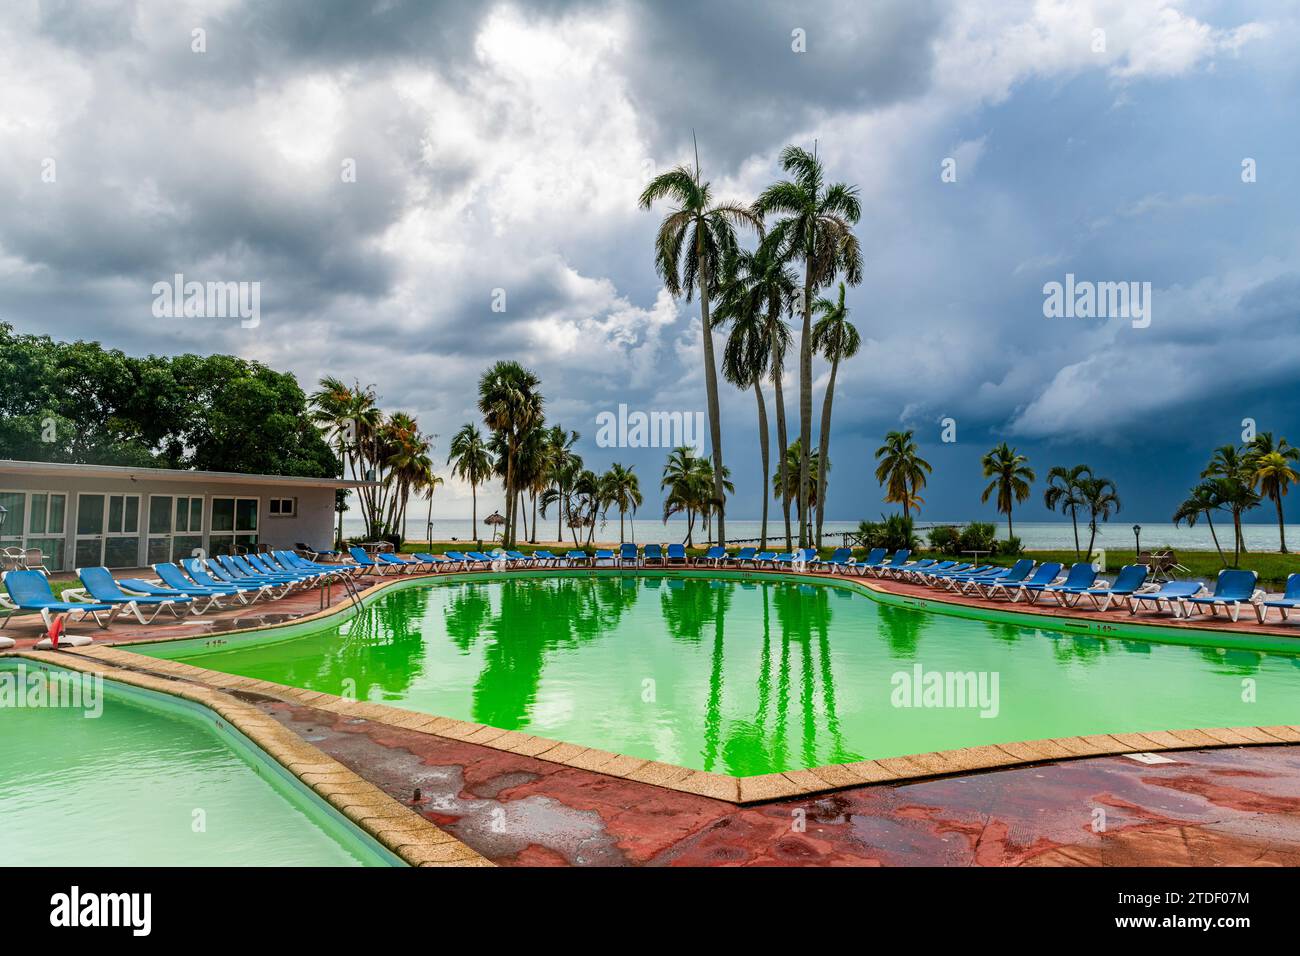 Piscine verte dans un hôtel de luxe à l'Hôtel el Colony avant une tempête, Isla de la Juventud (Île de la Jeunesse), Cuba, Antilles, Amérique centrale Banque D'Images